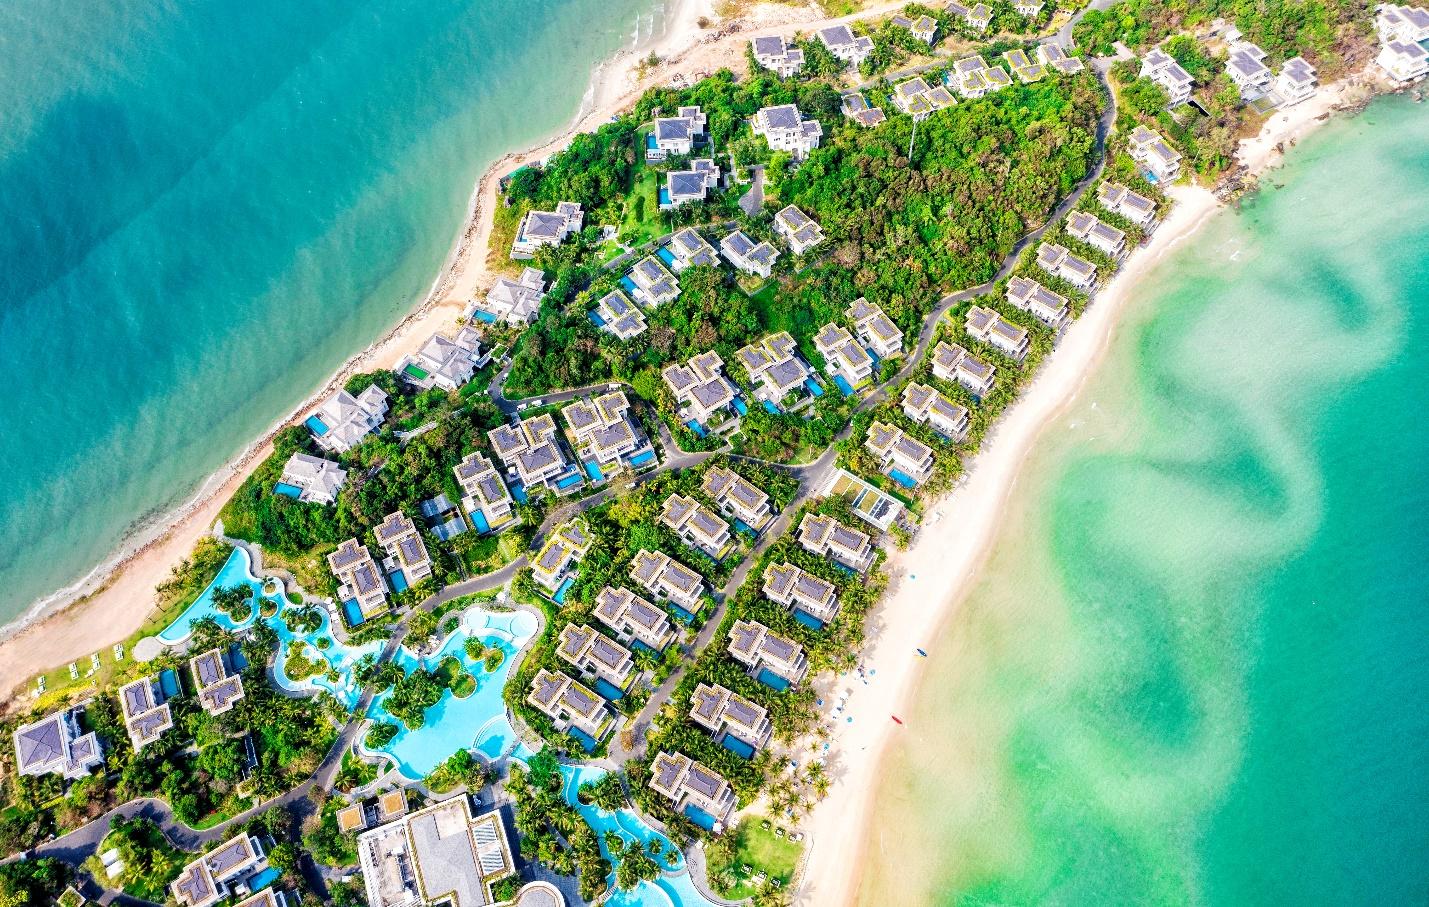 Chiêm ngưỡng những khu nghỉ dưỡng danh giá thế giới khắp 3 miền của Tập đoàn du lịch hàng đầu châu Á - Sun Group - Ảnh 1.